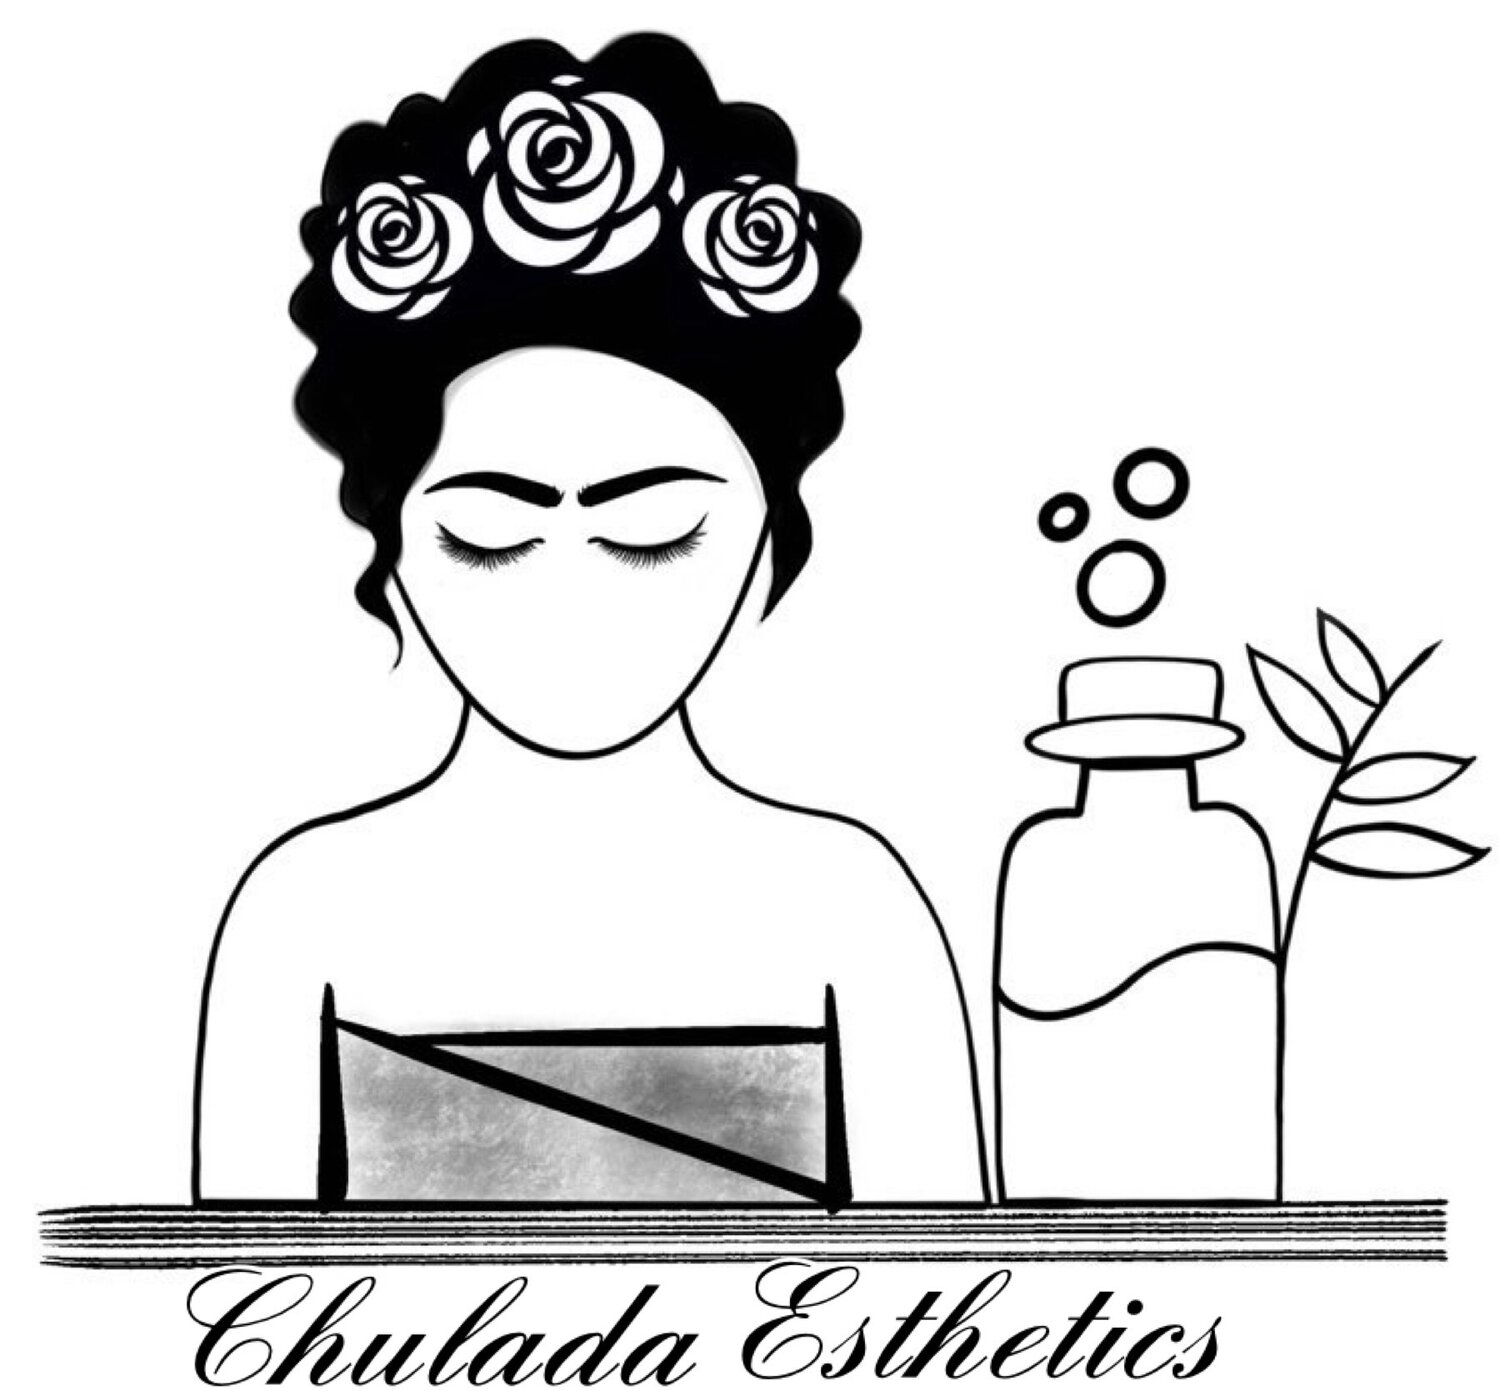 Chulada Esthetics LLC